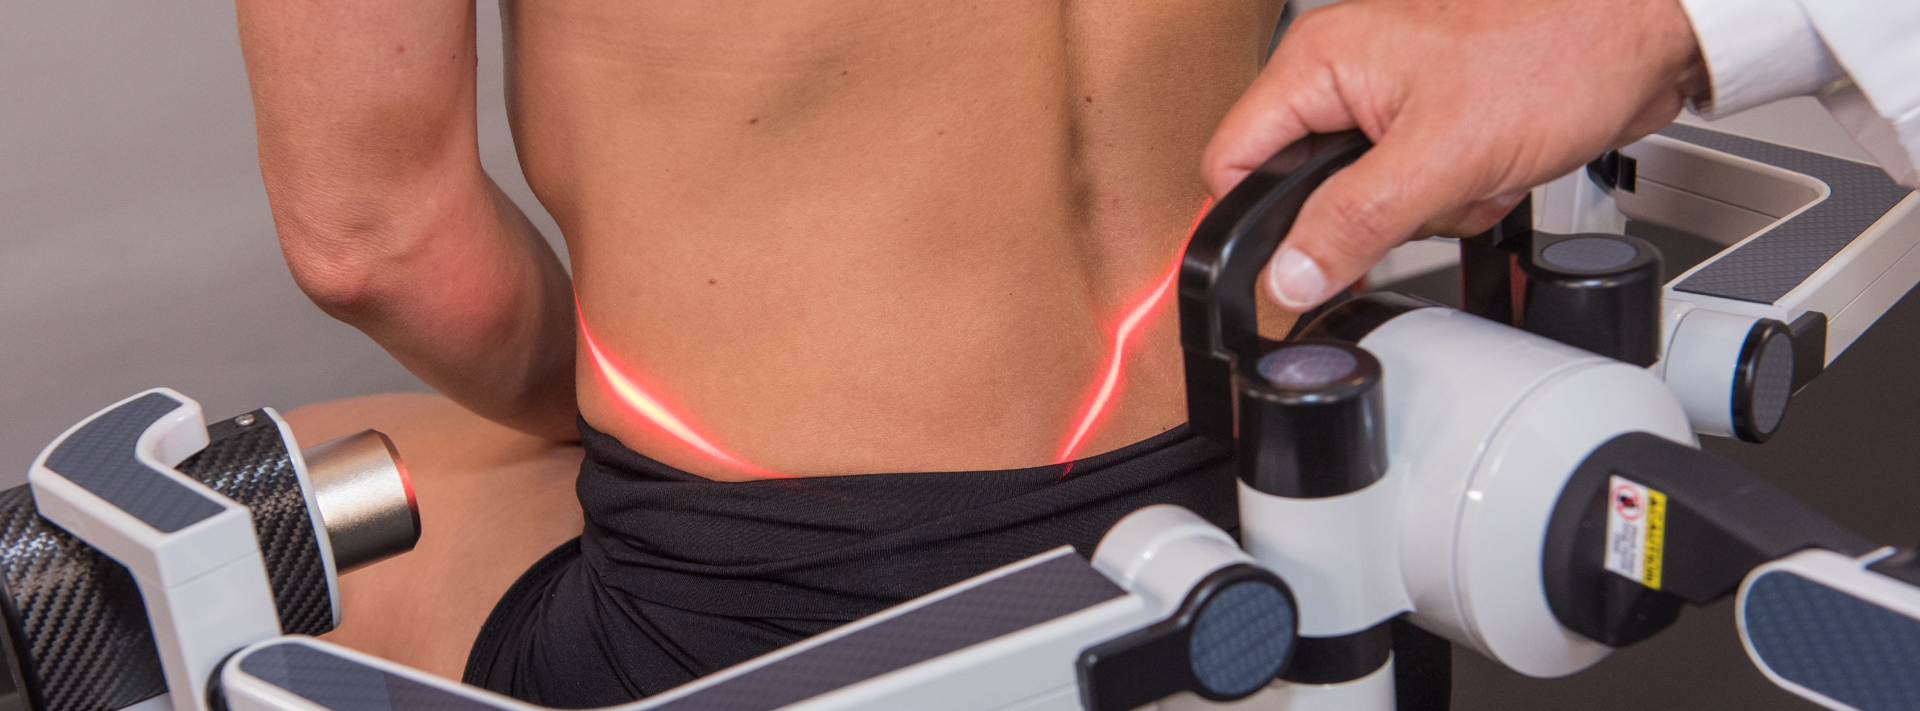 low back pain laser treatment